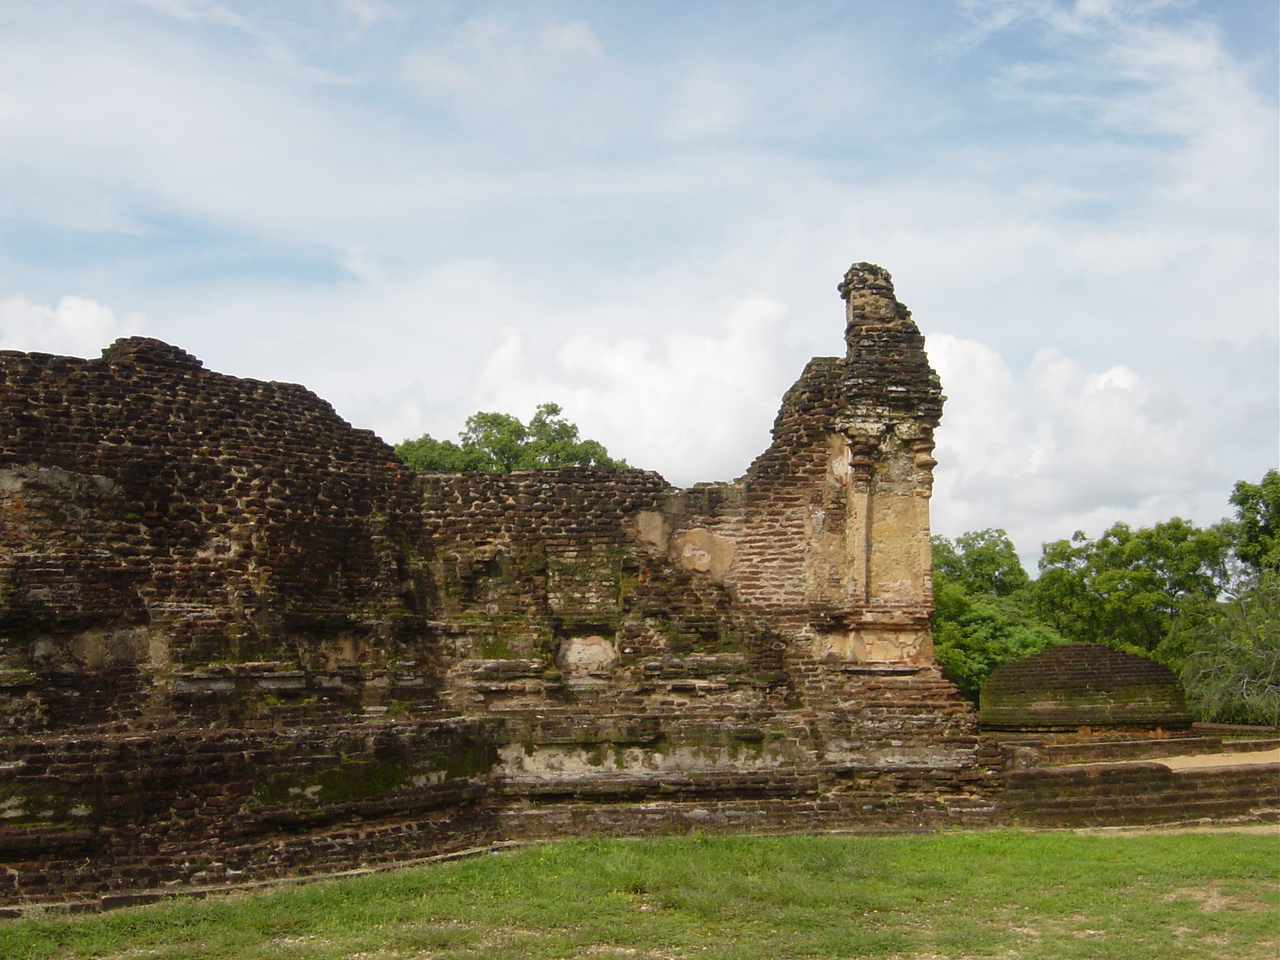 Polanaruwa ruins